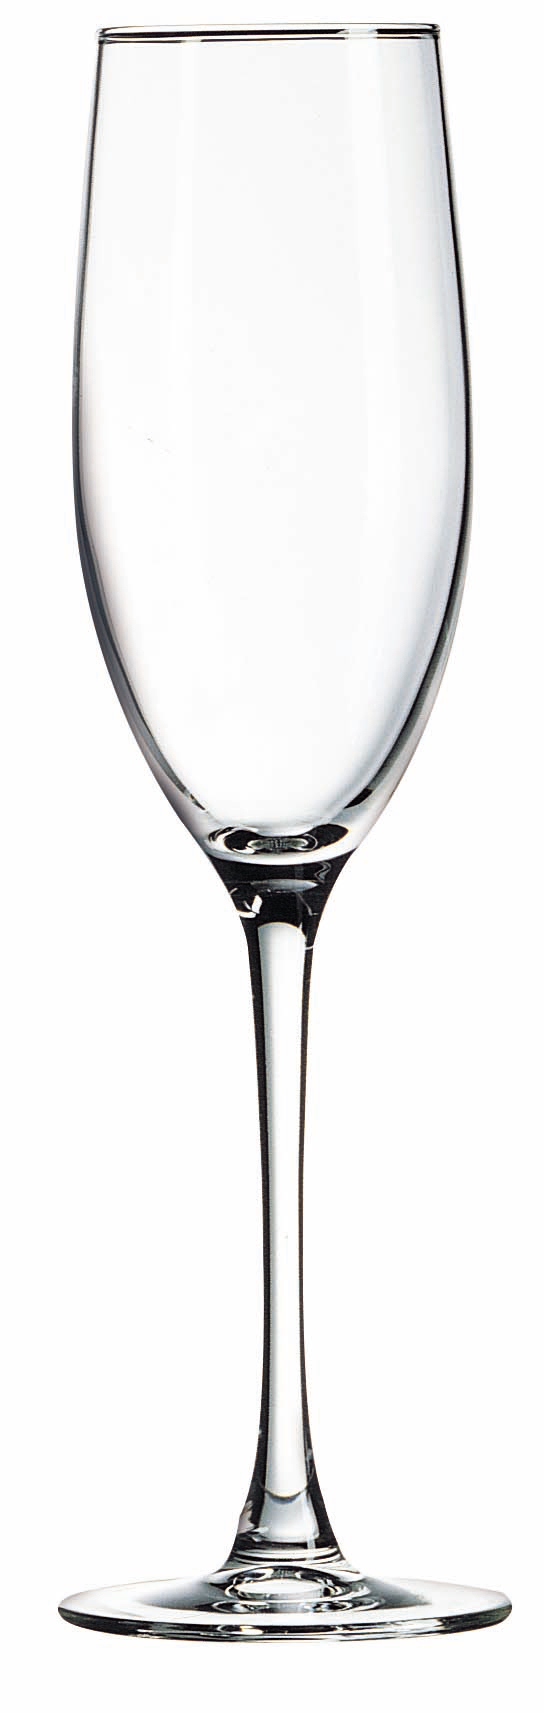 Cachet 8 oz. Grand Champagne Flute